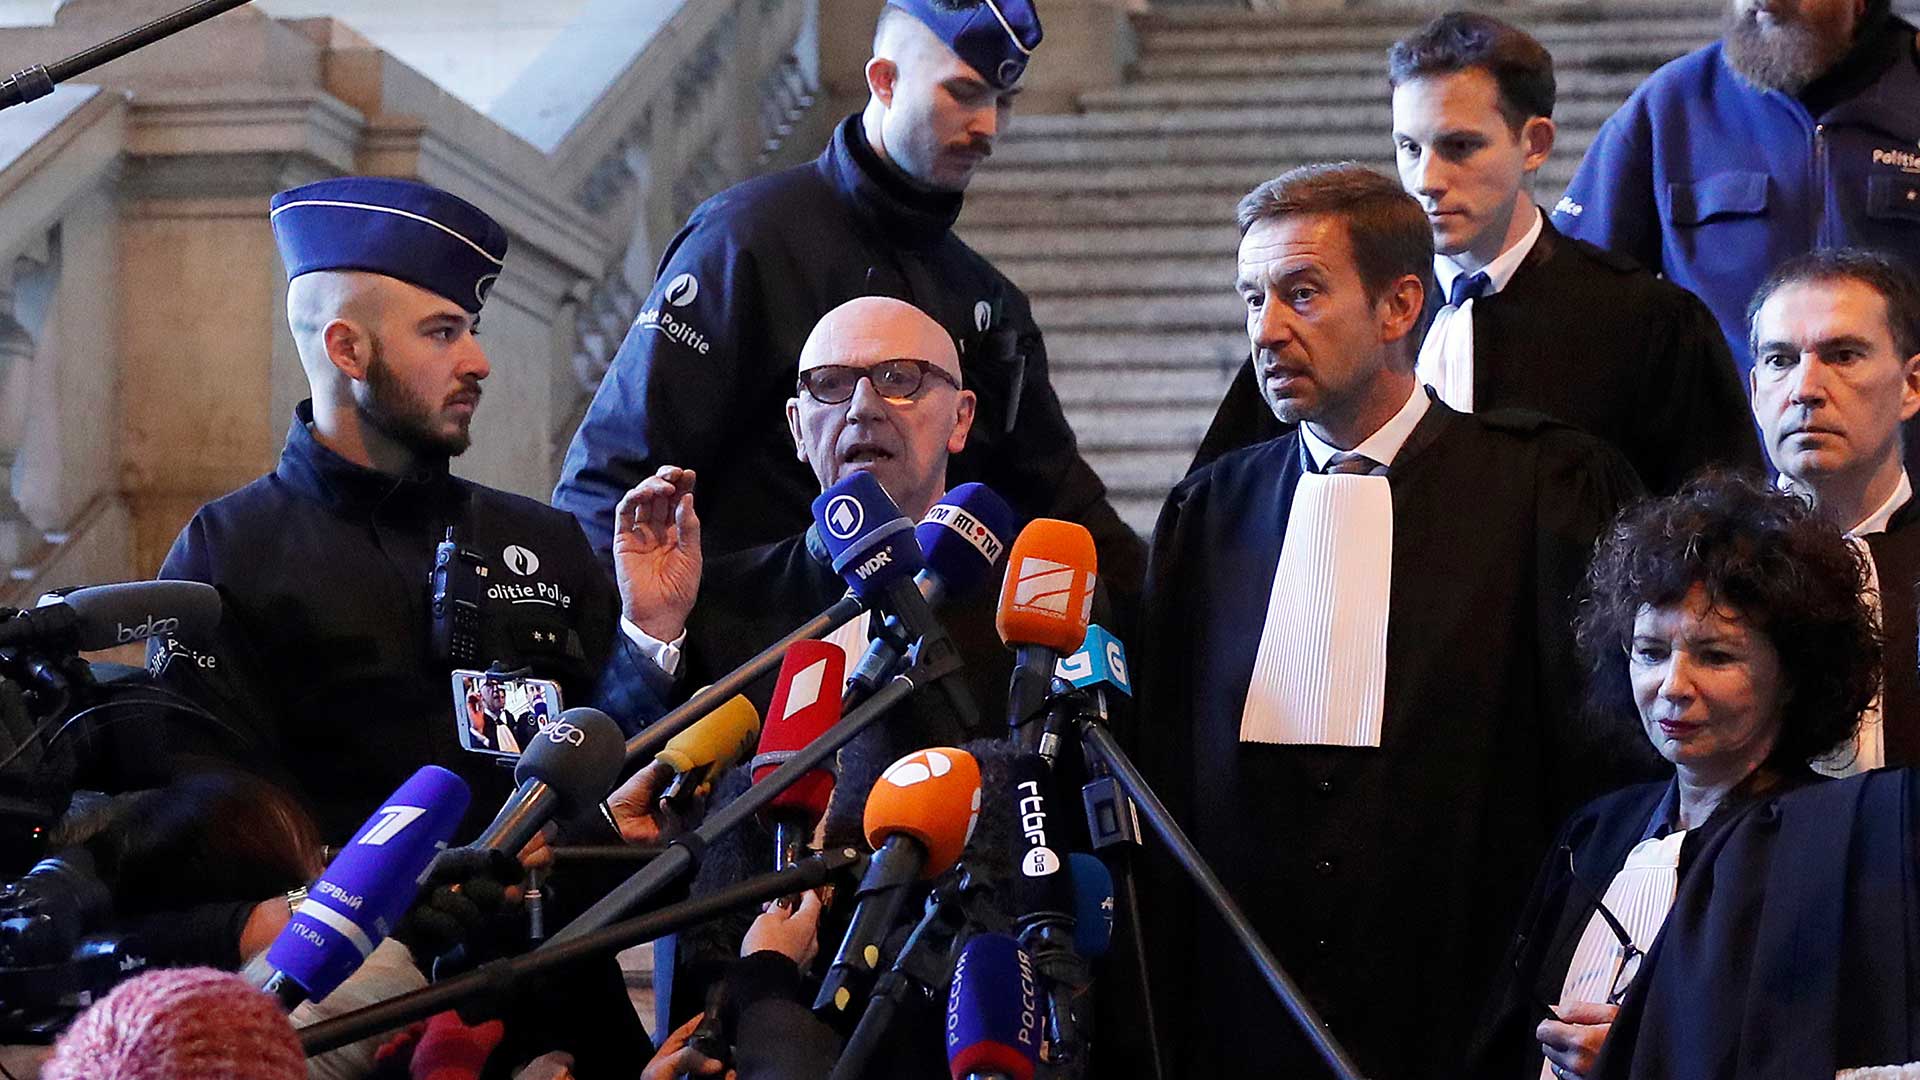 El juez belga aplaza la decisión de extraditar a Puigdemont